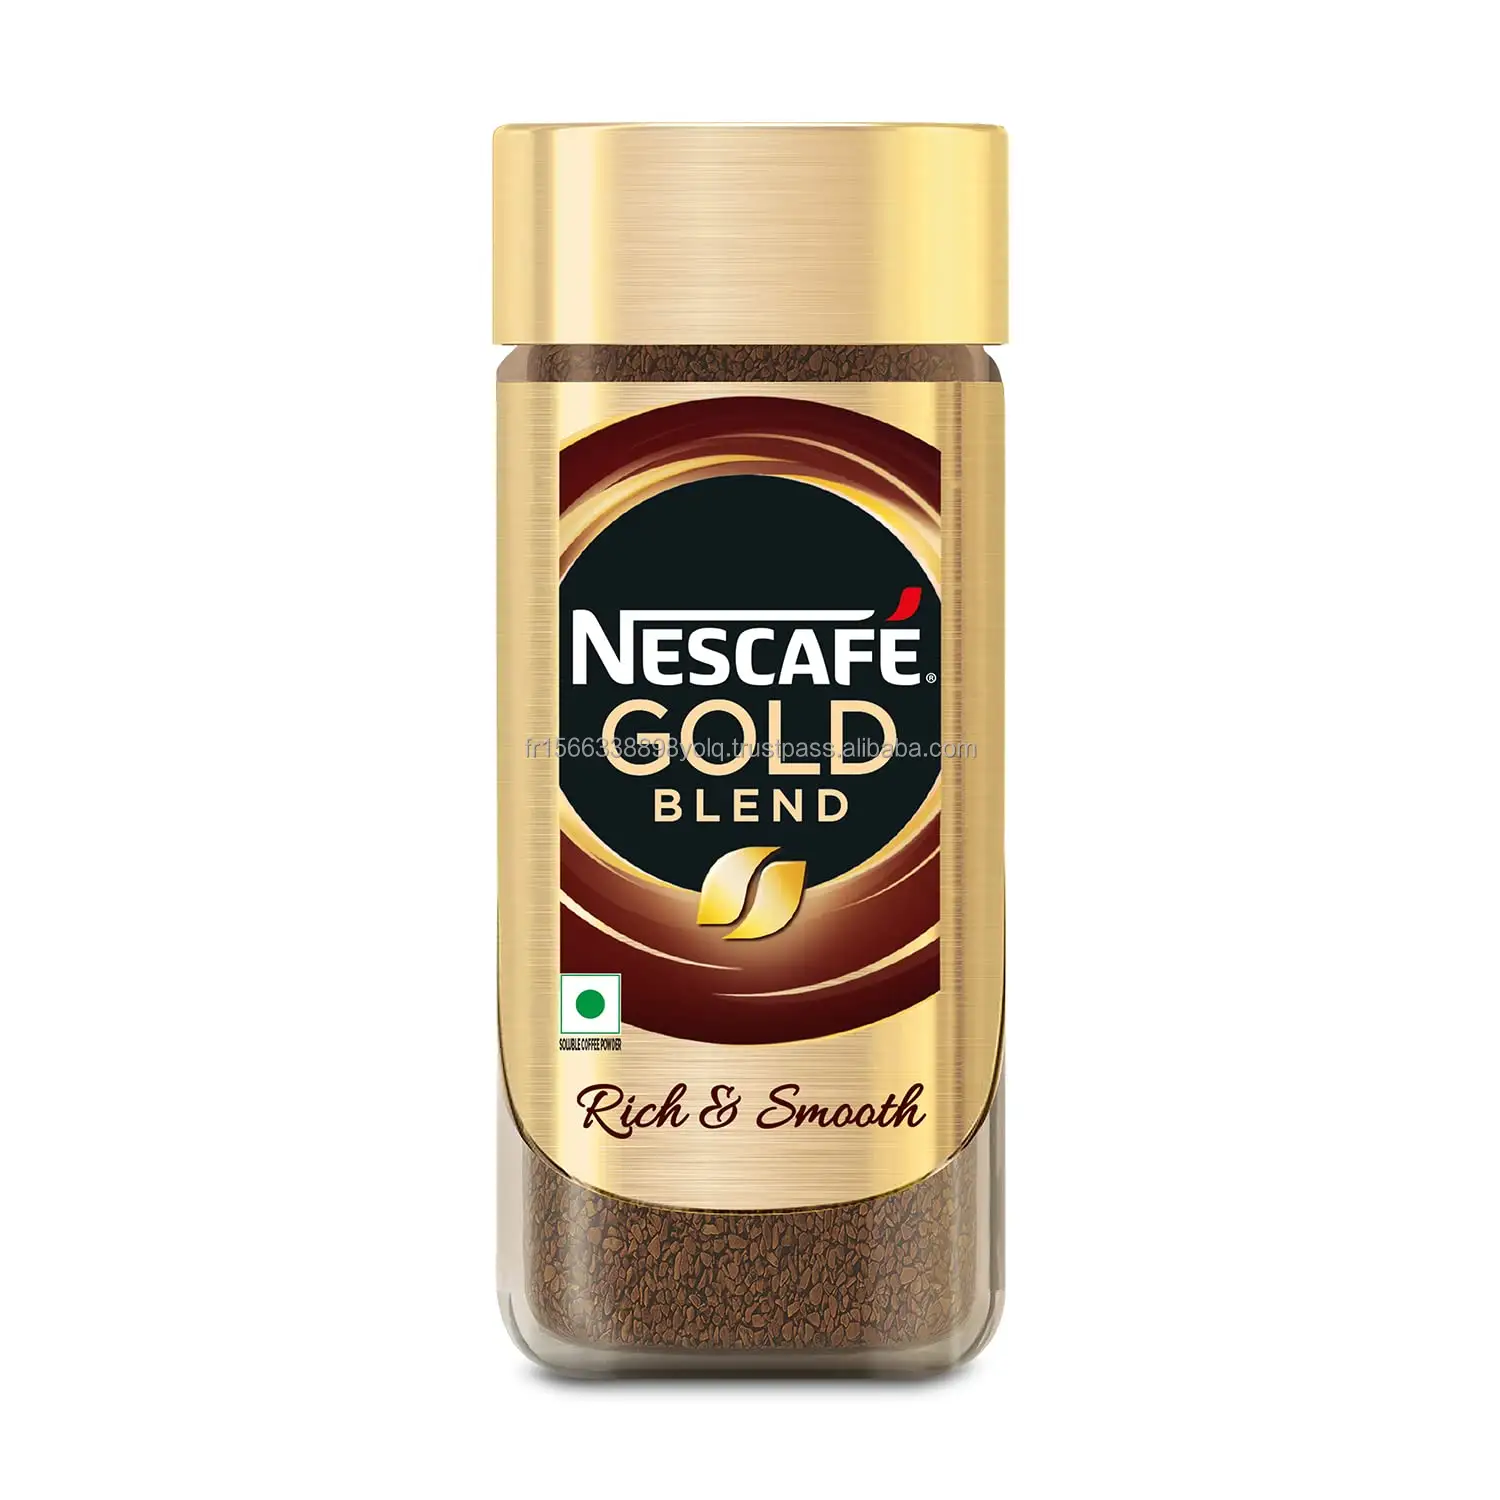 NESCAFE GOLD BLEND CAFÉ INSTANTÁNEO 200G de NESCAFE